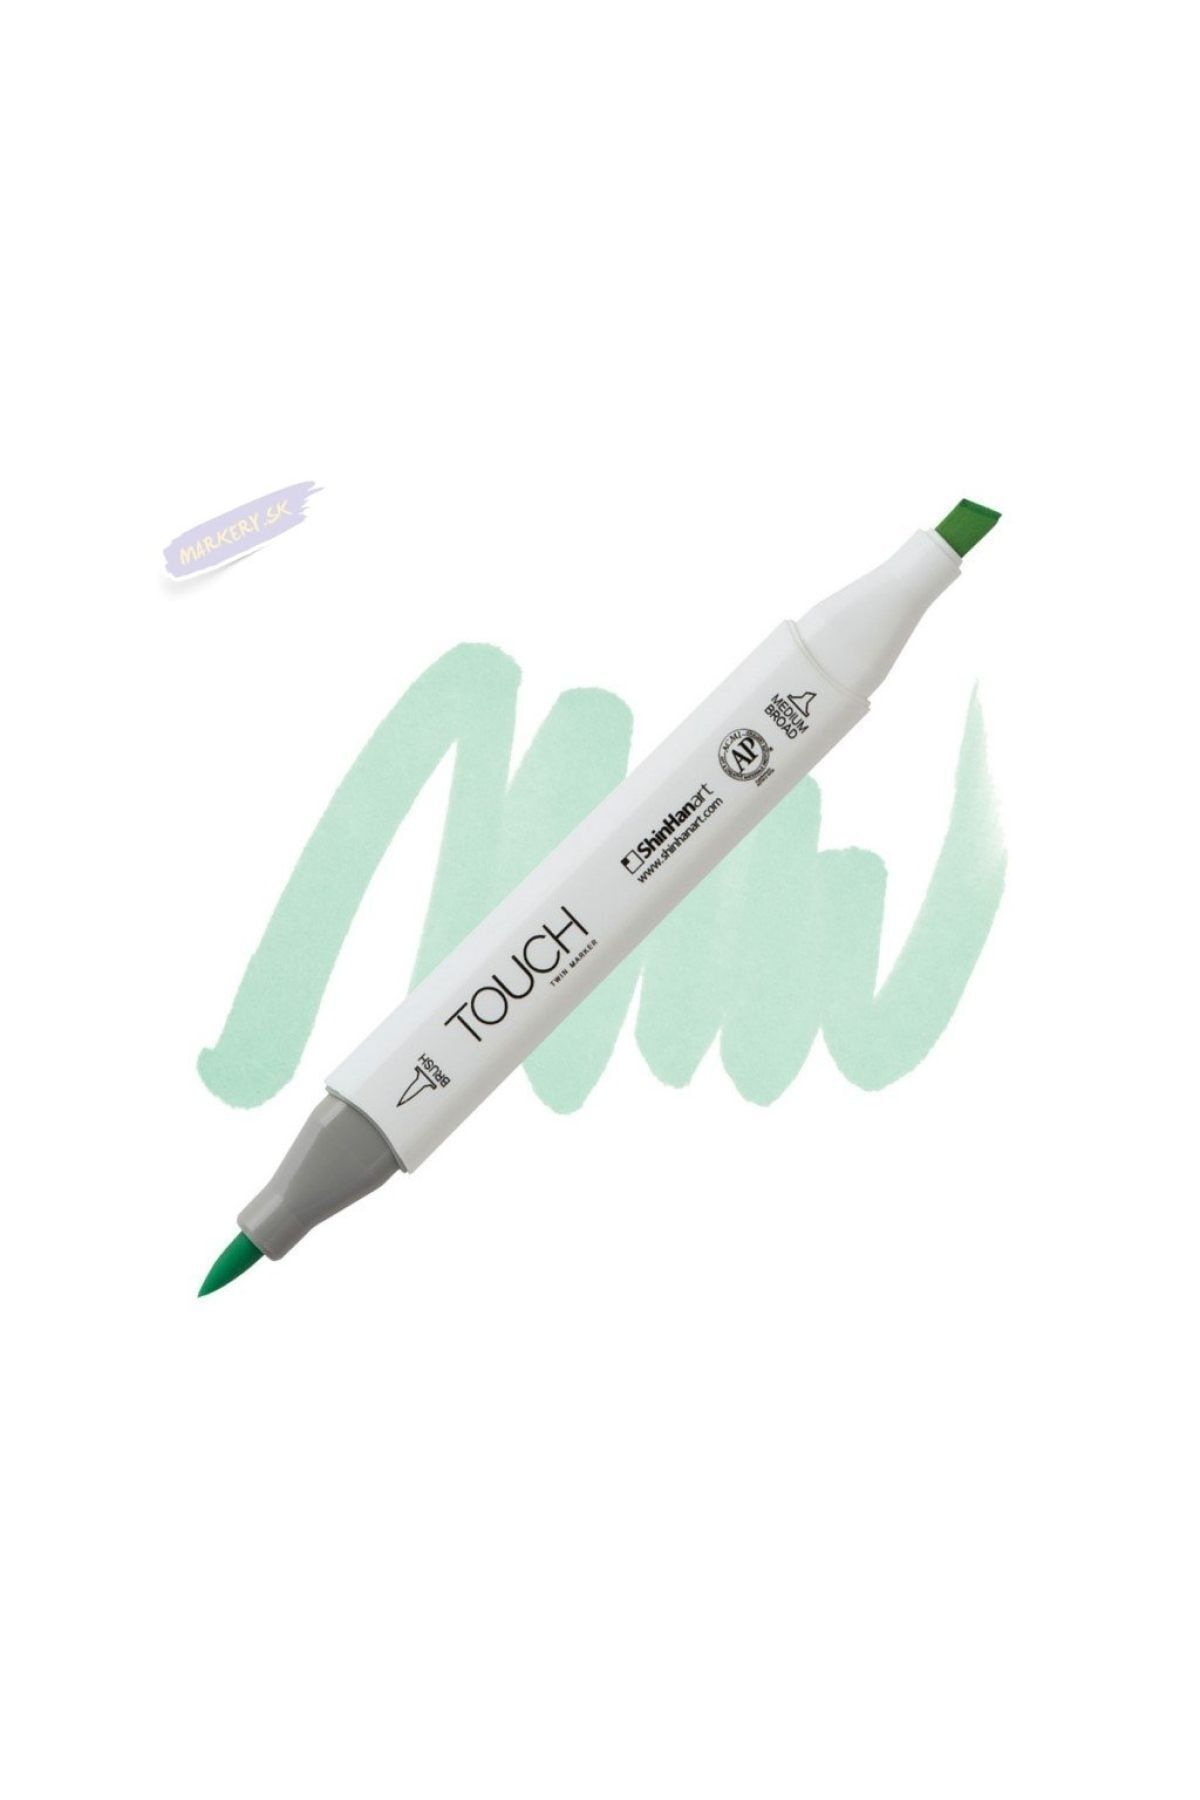 Shinhan Art Touch Twın Brush Pen : Çift Taraflı Marker : Gy172 Spectrum Green